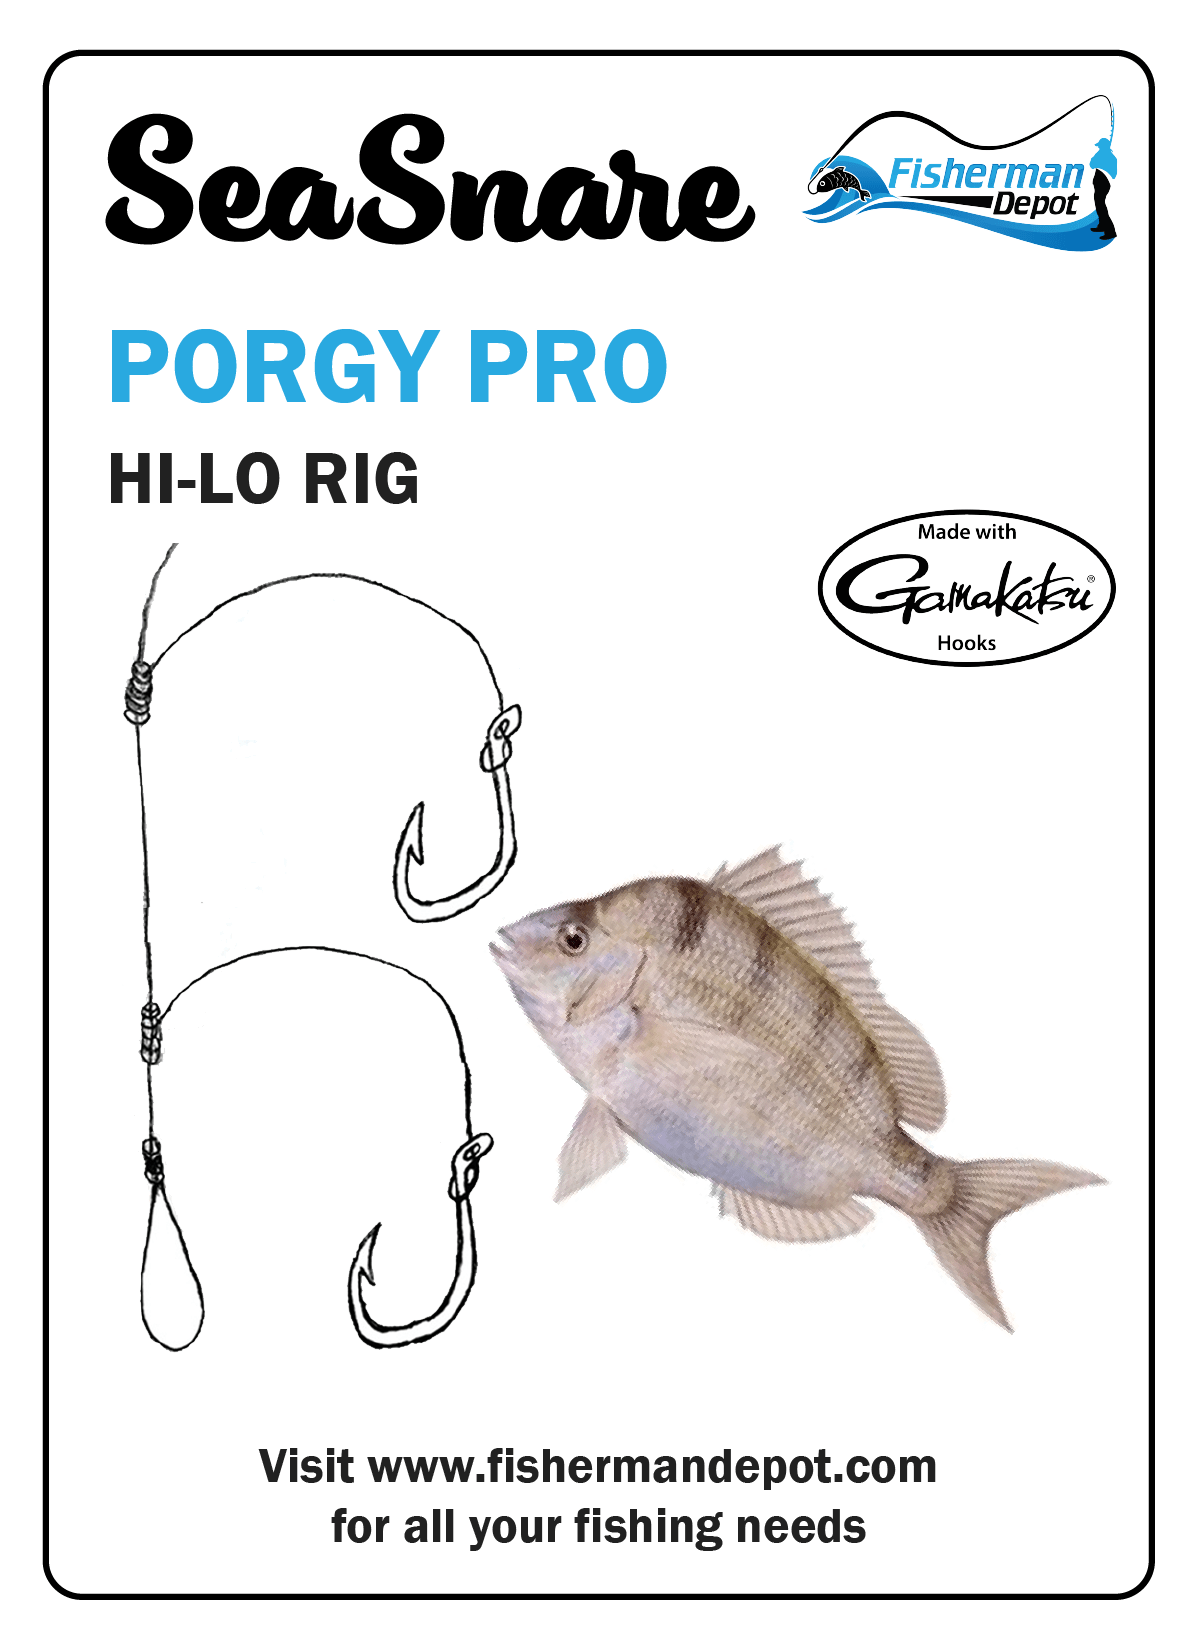 SeaSnare - Porgy Pro Hi-Lo Rig